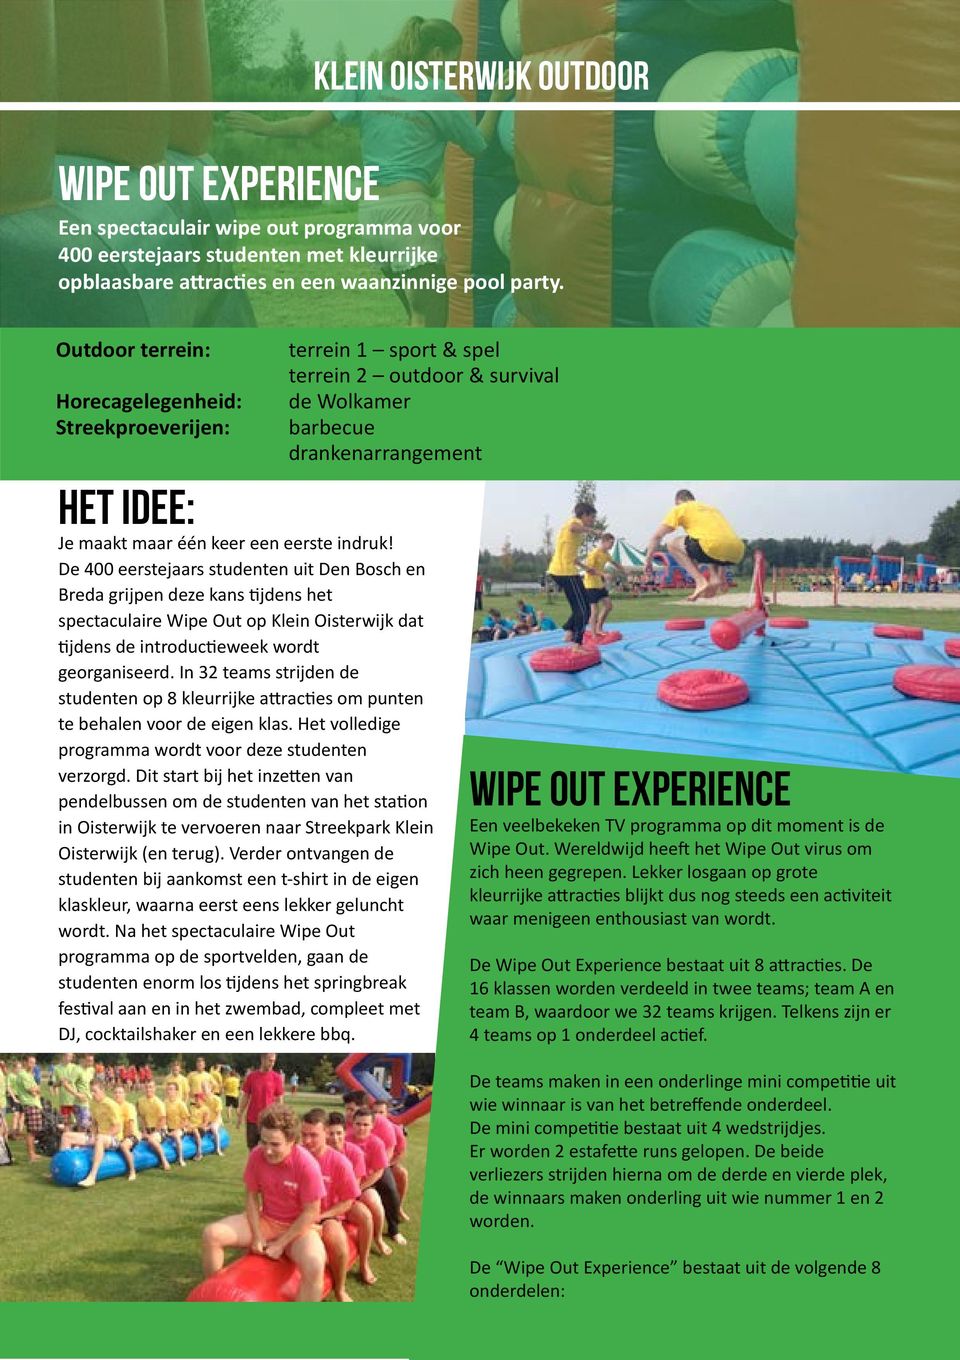 De 400 eerstejaars studenten uit Den Bosch en Breda grijpen deze kans tijdens het spectaculaire Wipe Out op Klein Oisterwijk dat tijdens de introductieweek wordt georganiseerd.